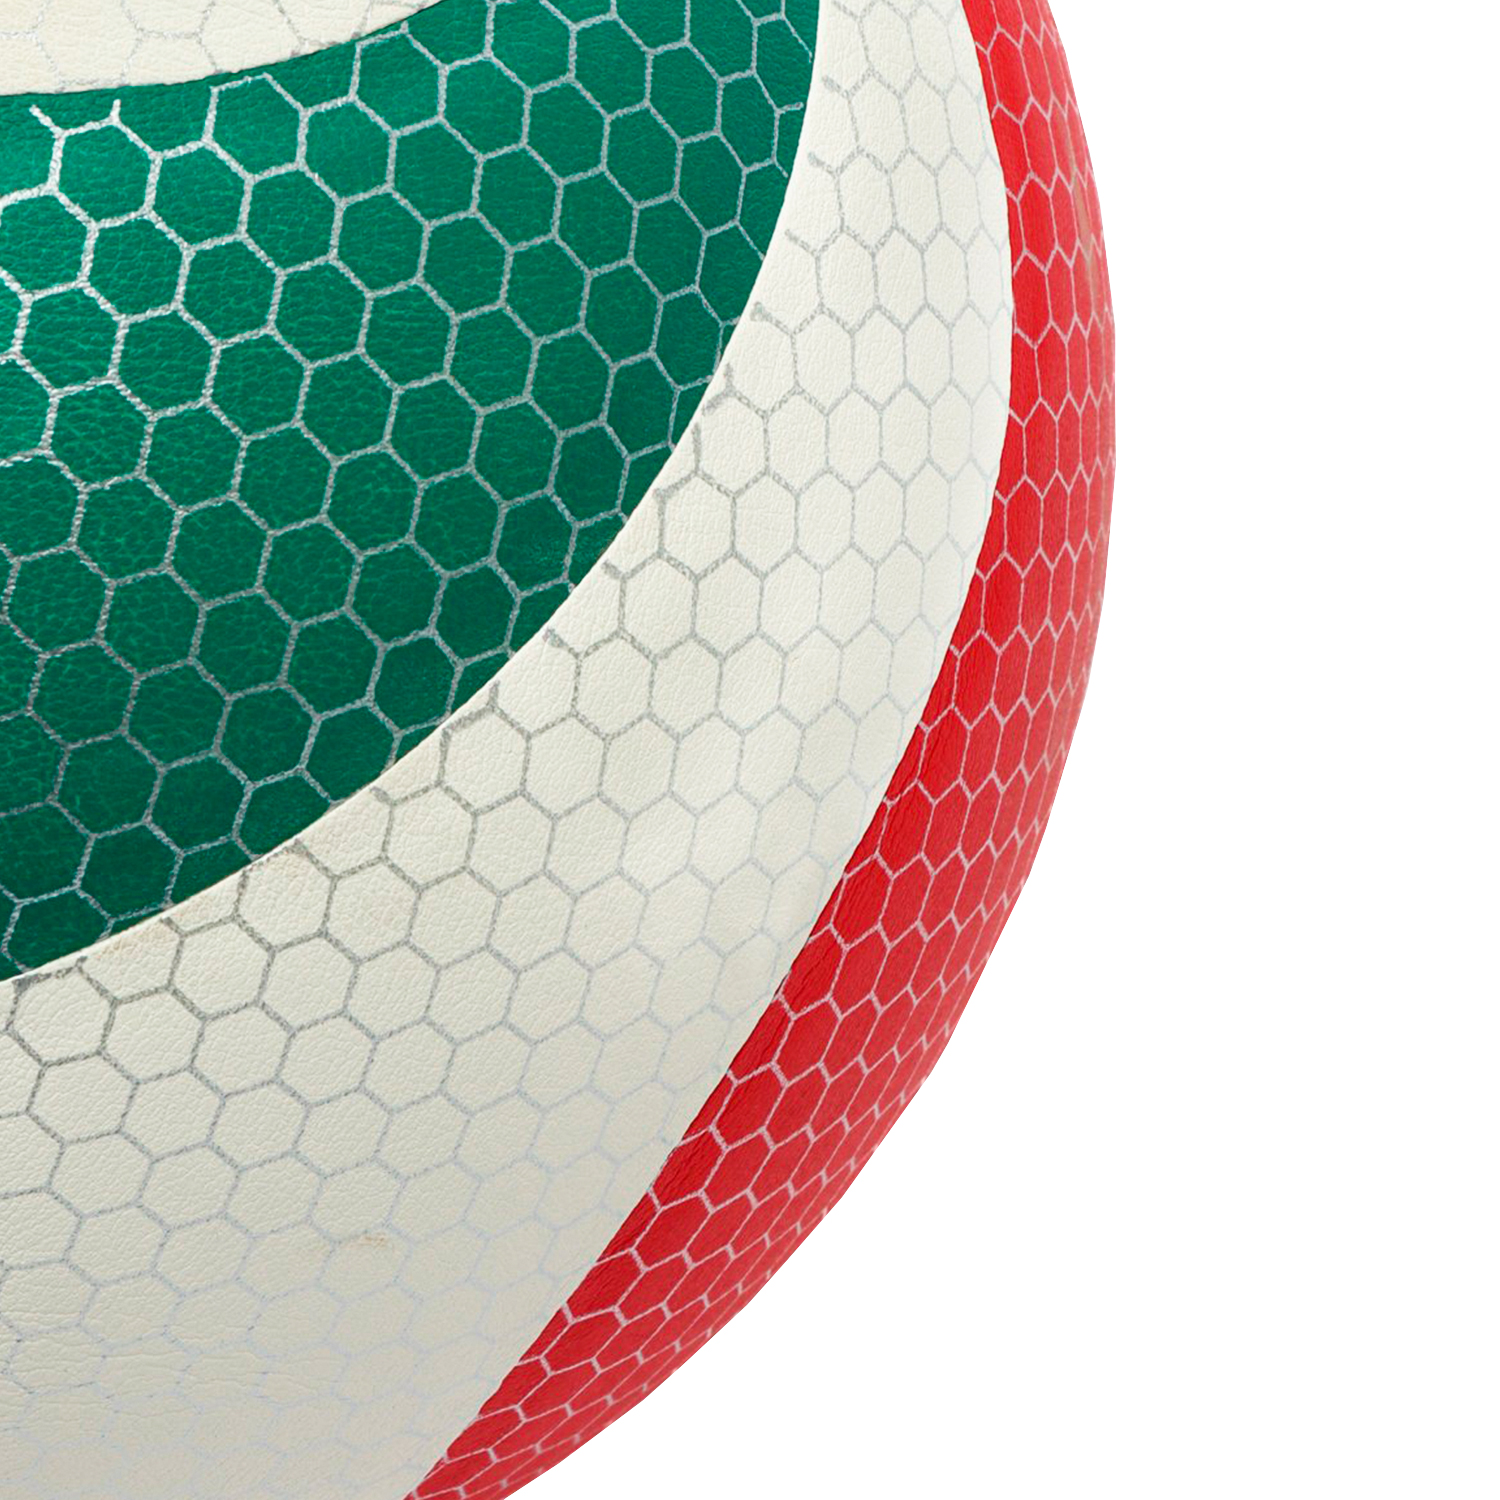 Волейбольный мяч PowerGym 5000, купить волейбольный мяч